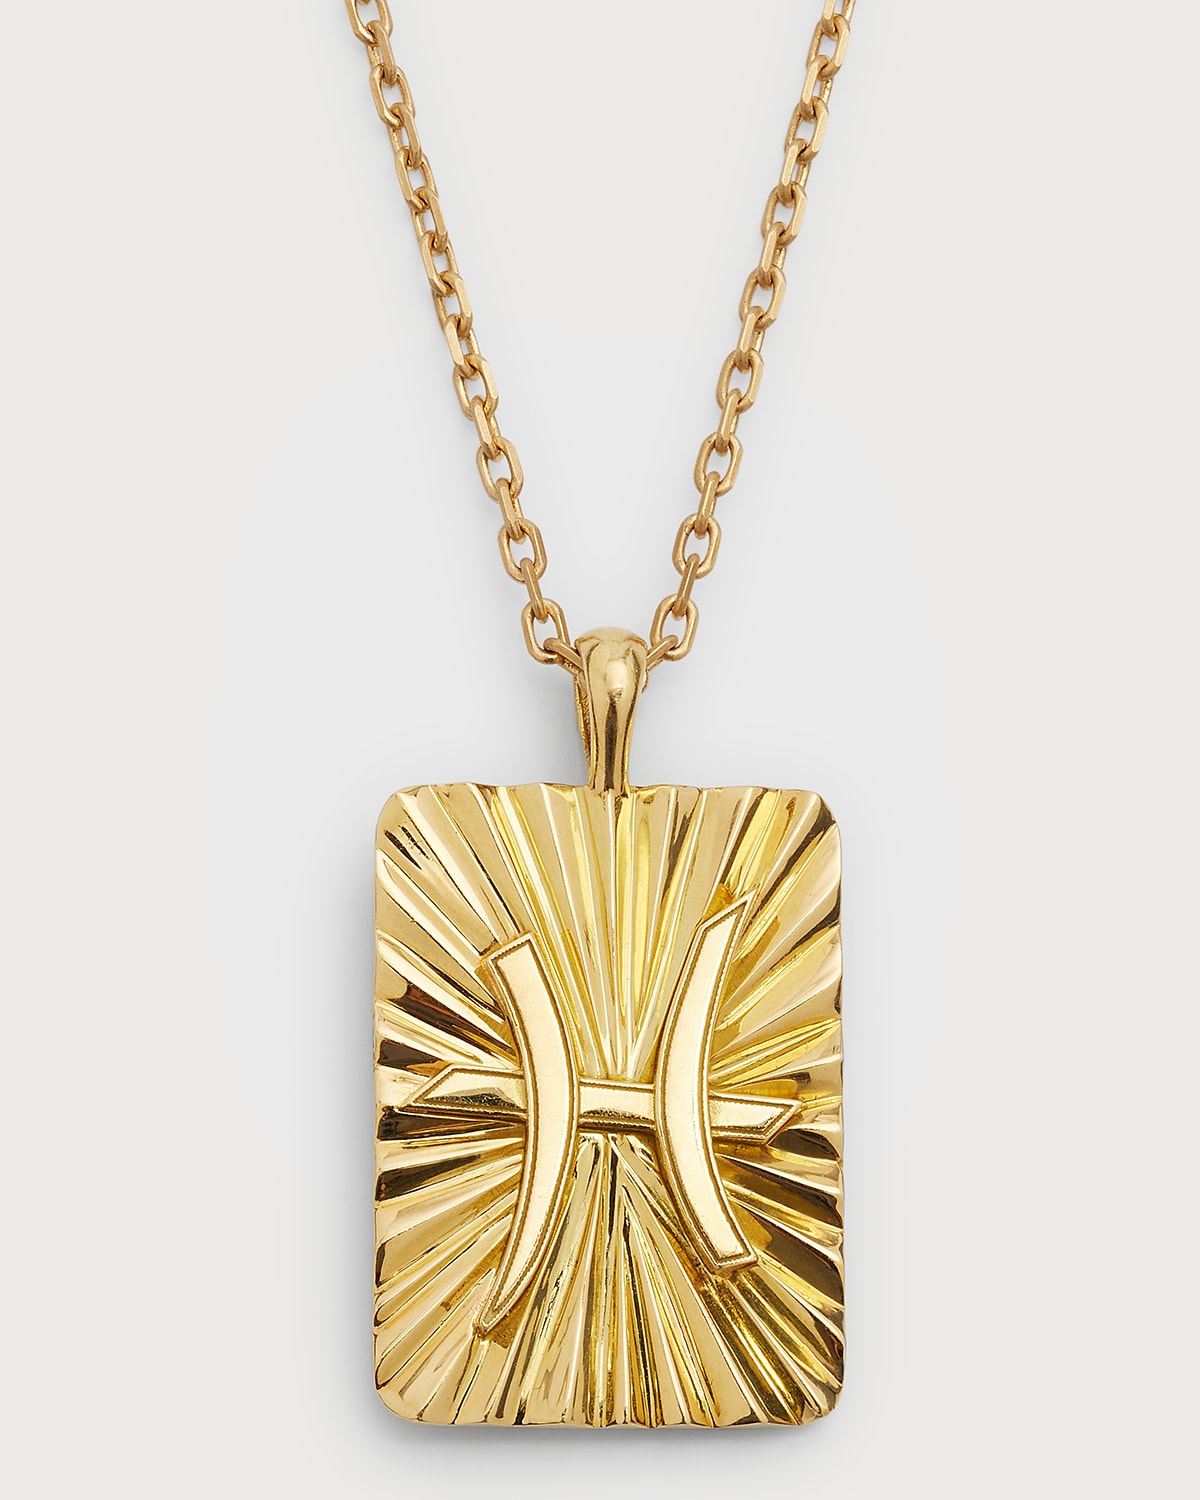 David Webb Pisces Zodiac Pendant Necklace in 18k Gold